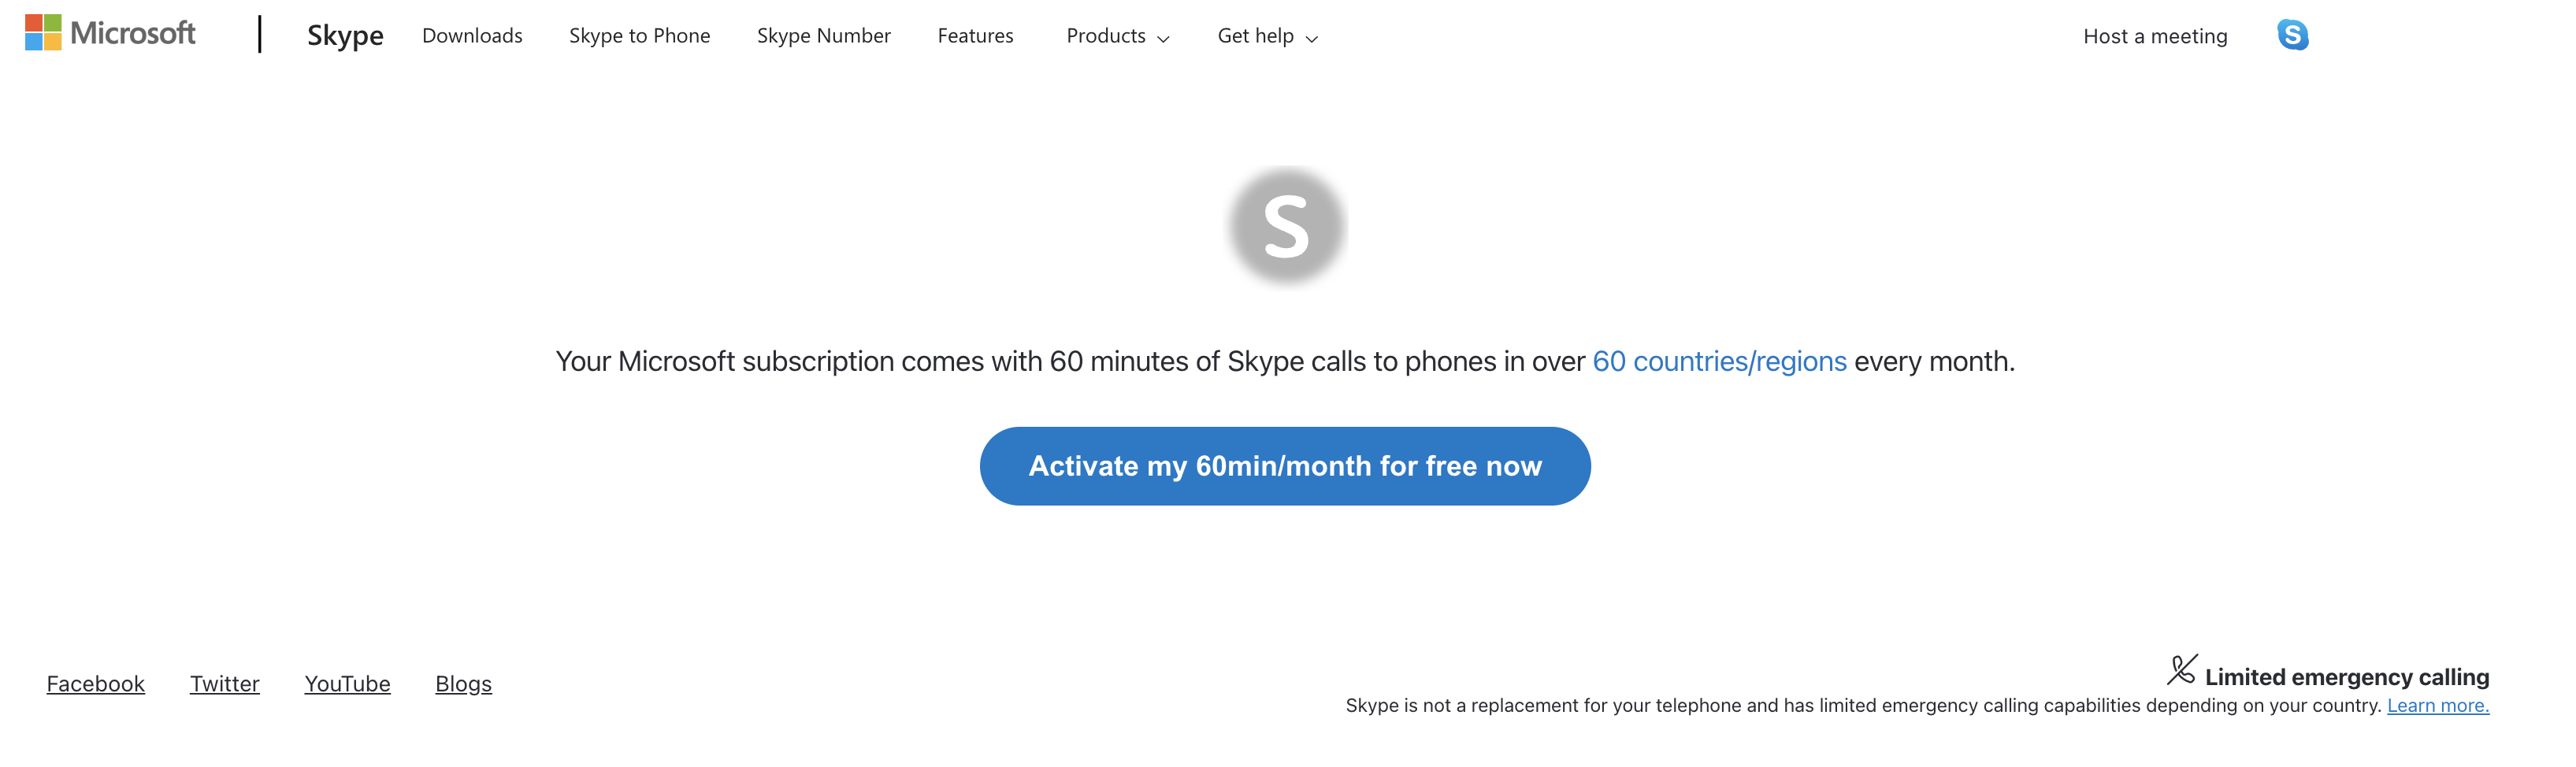 Página Web para ativar gratuitamente 60 minutos com o Skype